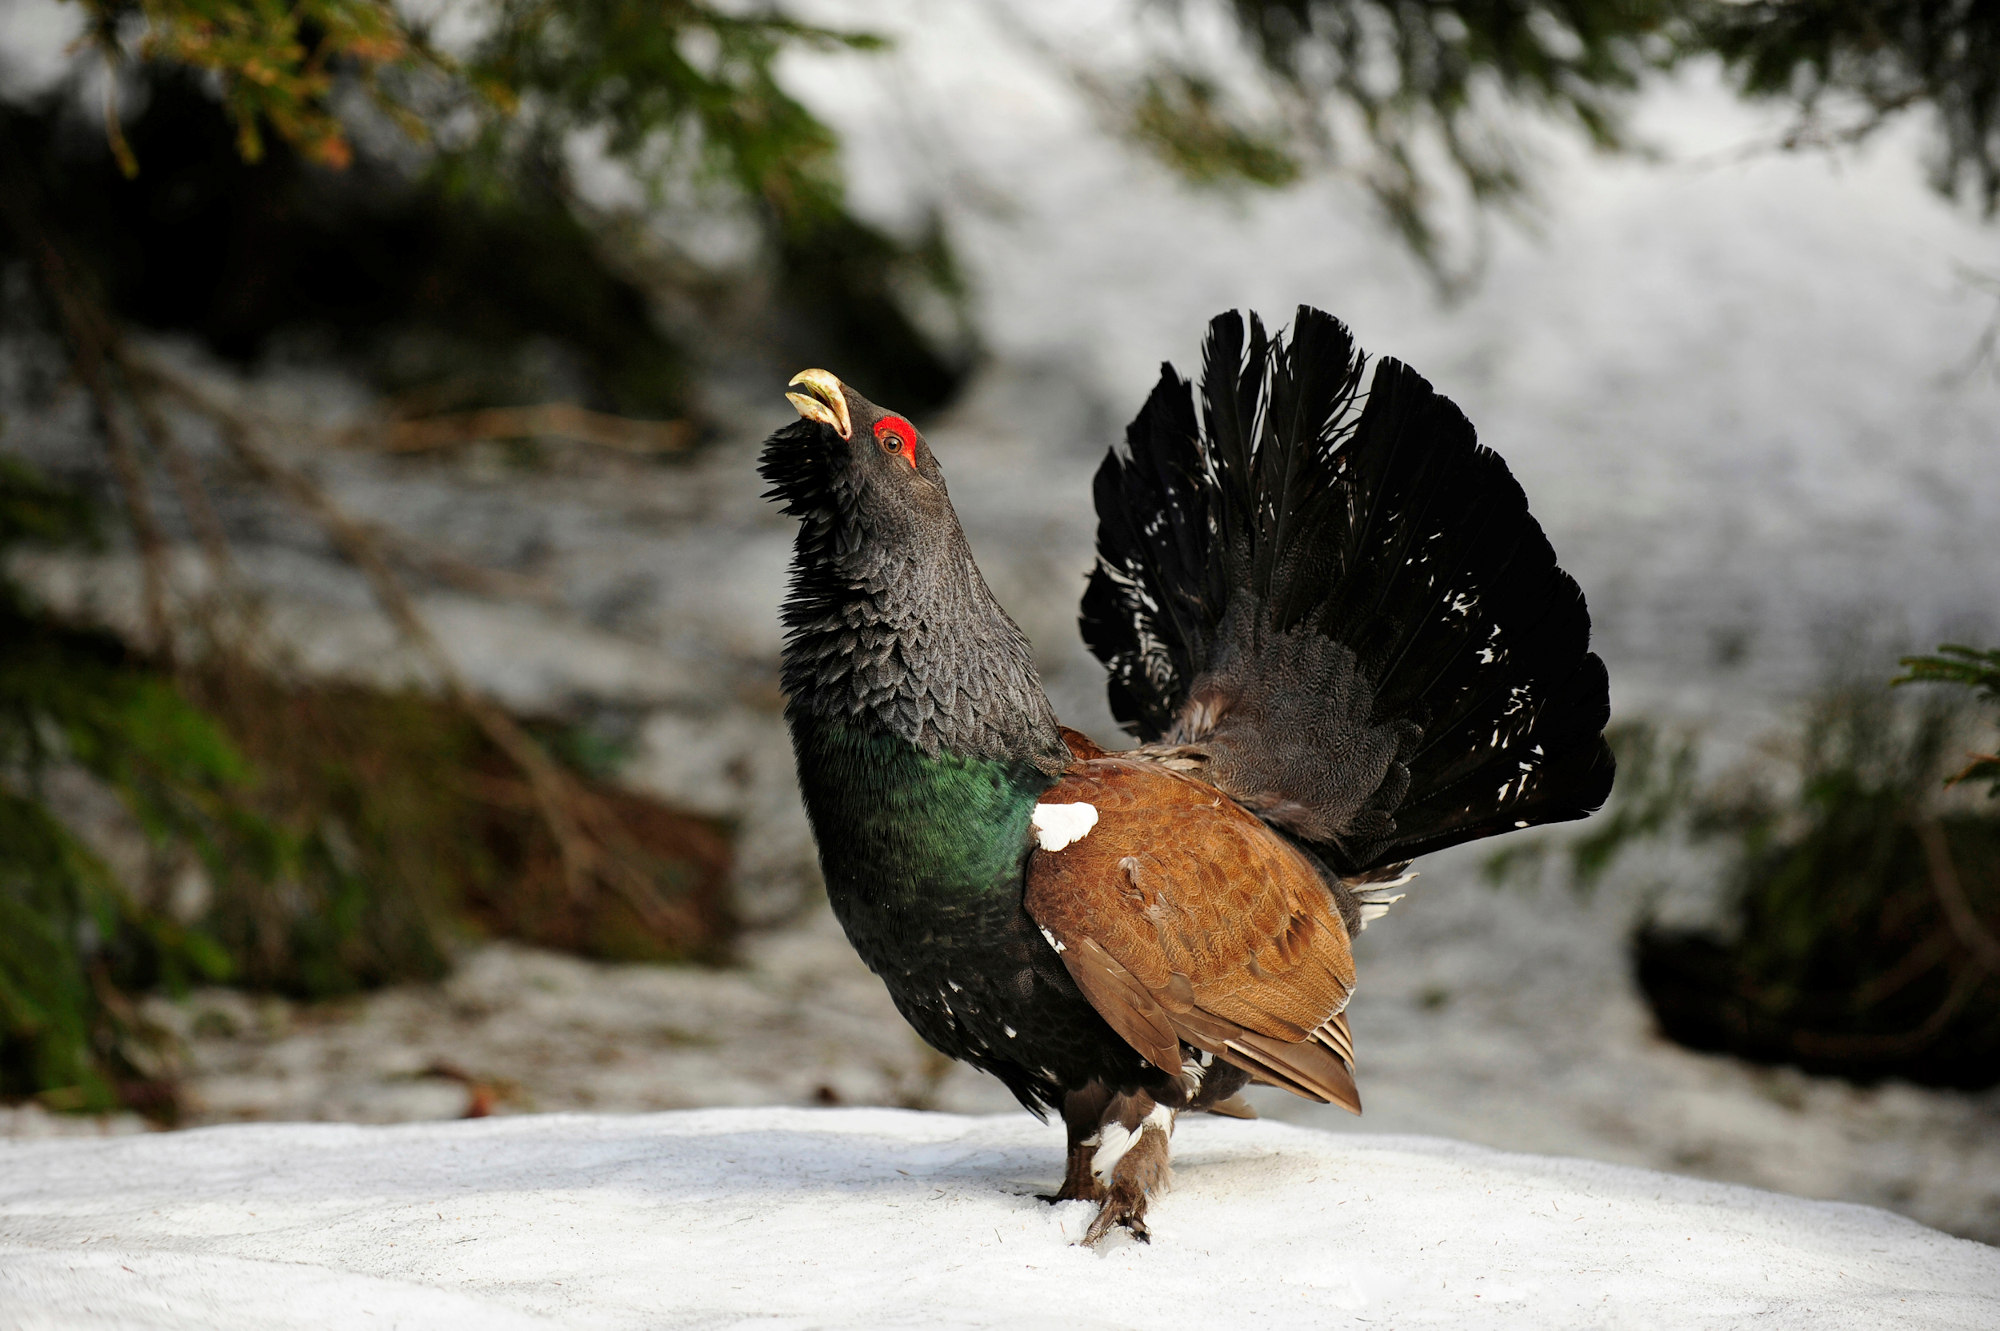 Ein großer Vogel steht im Wald auf einer schneebedeckten Lichtung. Er hat ein blauschwarzes Gefieder, seine schwarzen Schwanzfedern sind zu einem Rad aufgestellt. Die Flügel sind braun und über dem Auge sitzt ein charakteristischer roter Fleck.